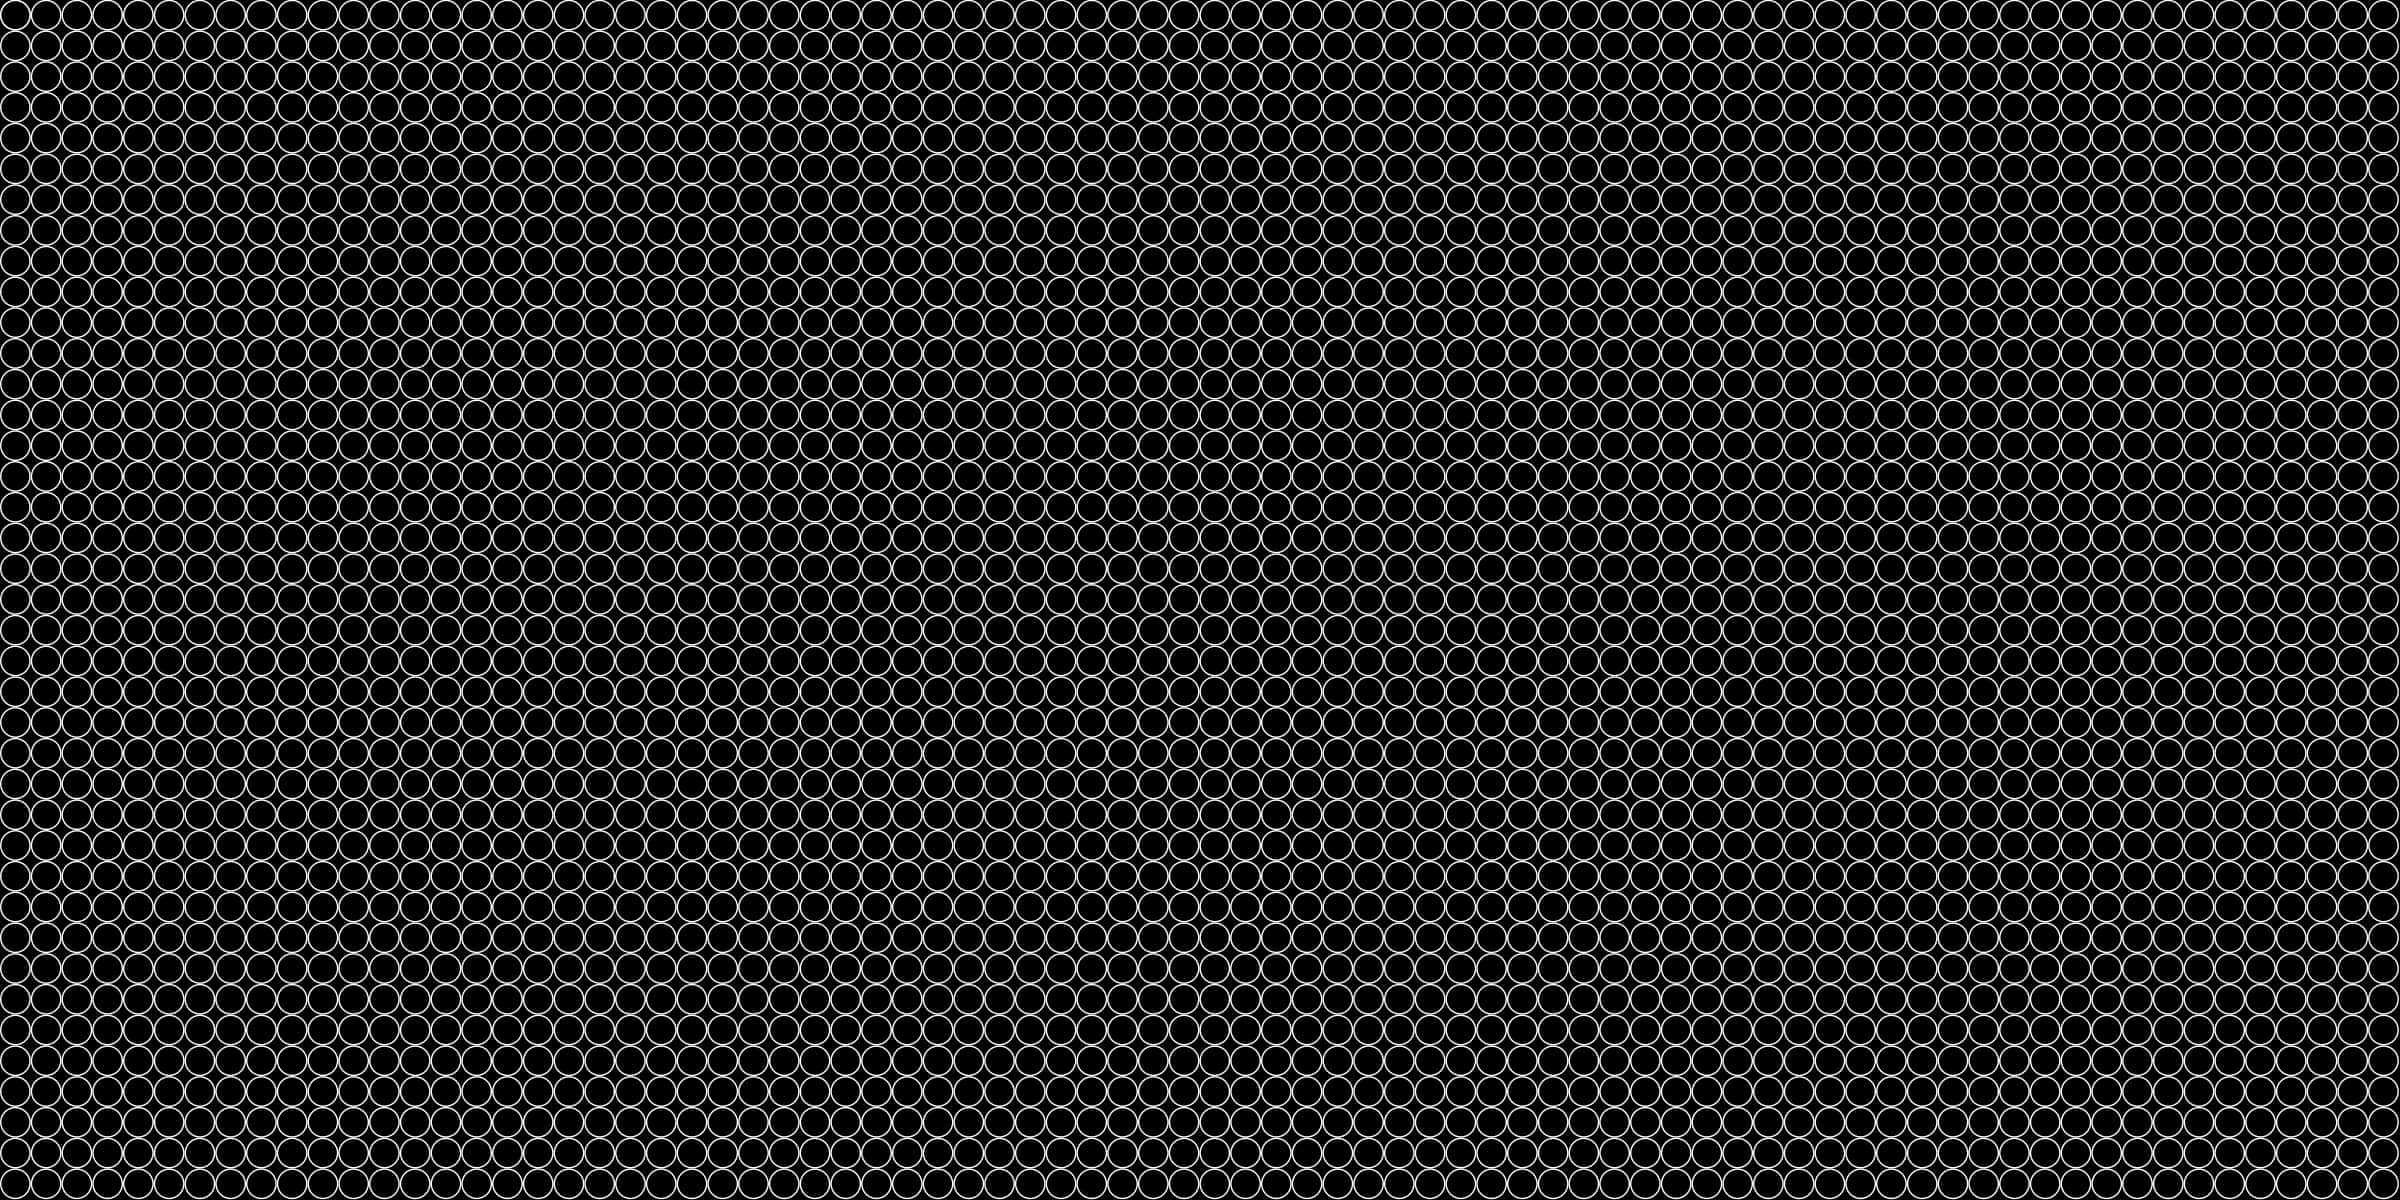 Black Hexagonal Dot Pattern Texture